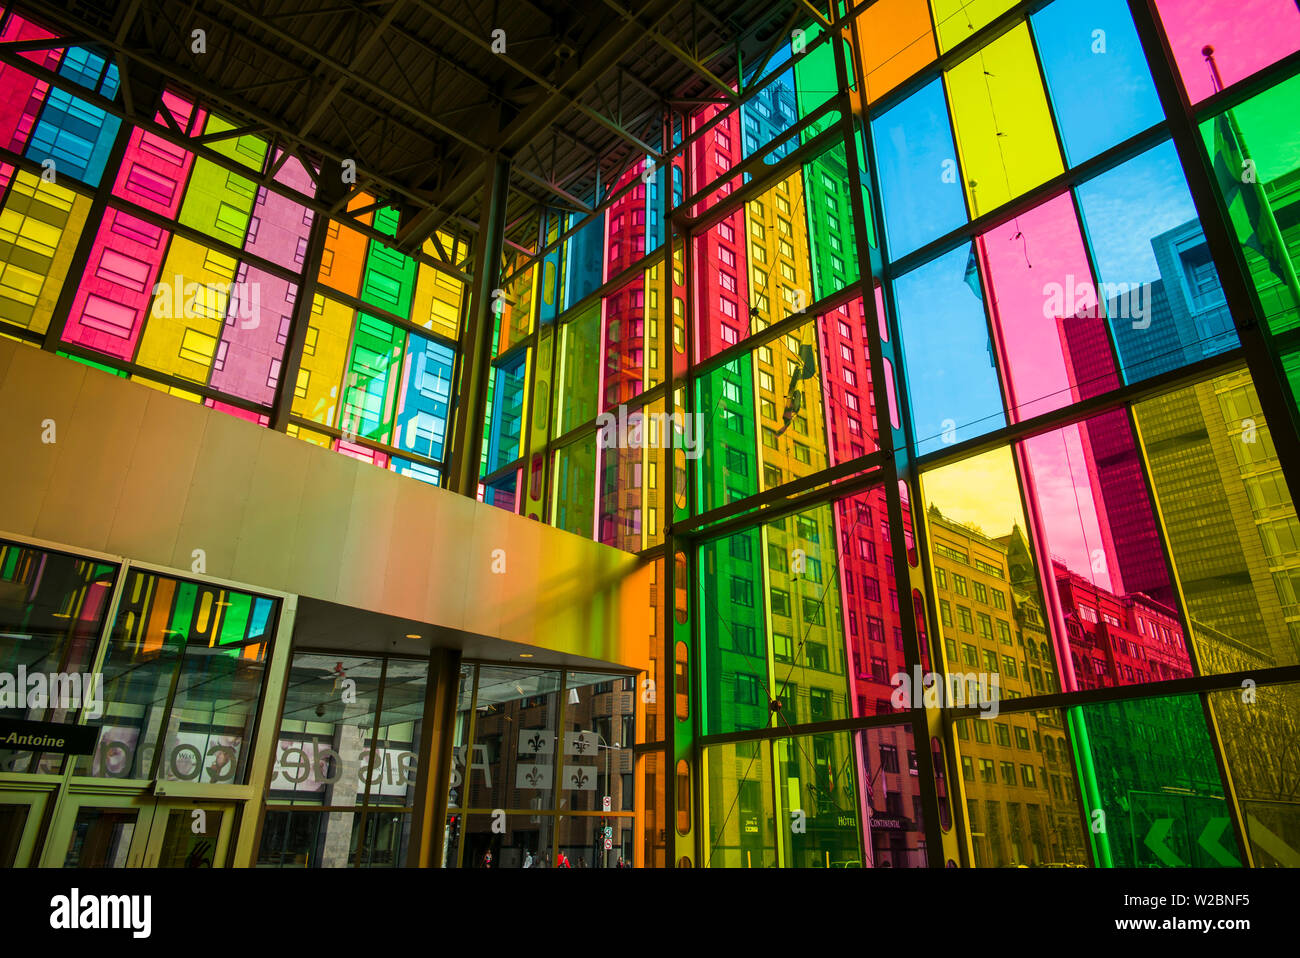 Canada, Quebec, Montreal, Palais de Congres de Montreal, convention Center, multi-colored windows Stock Photo